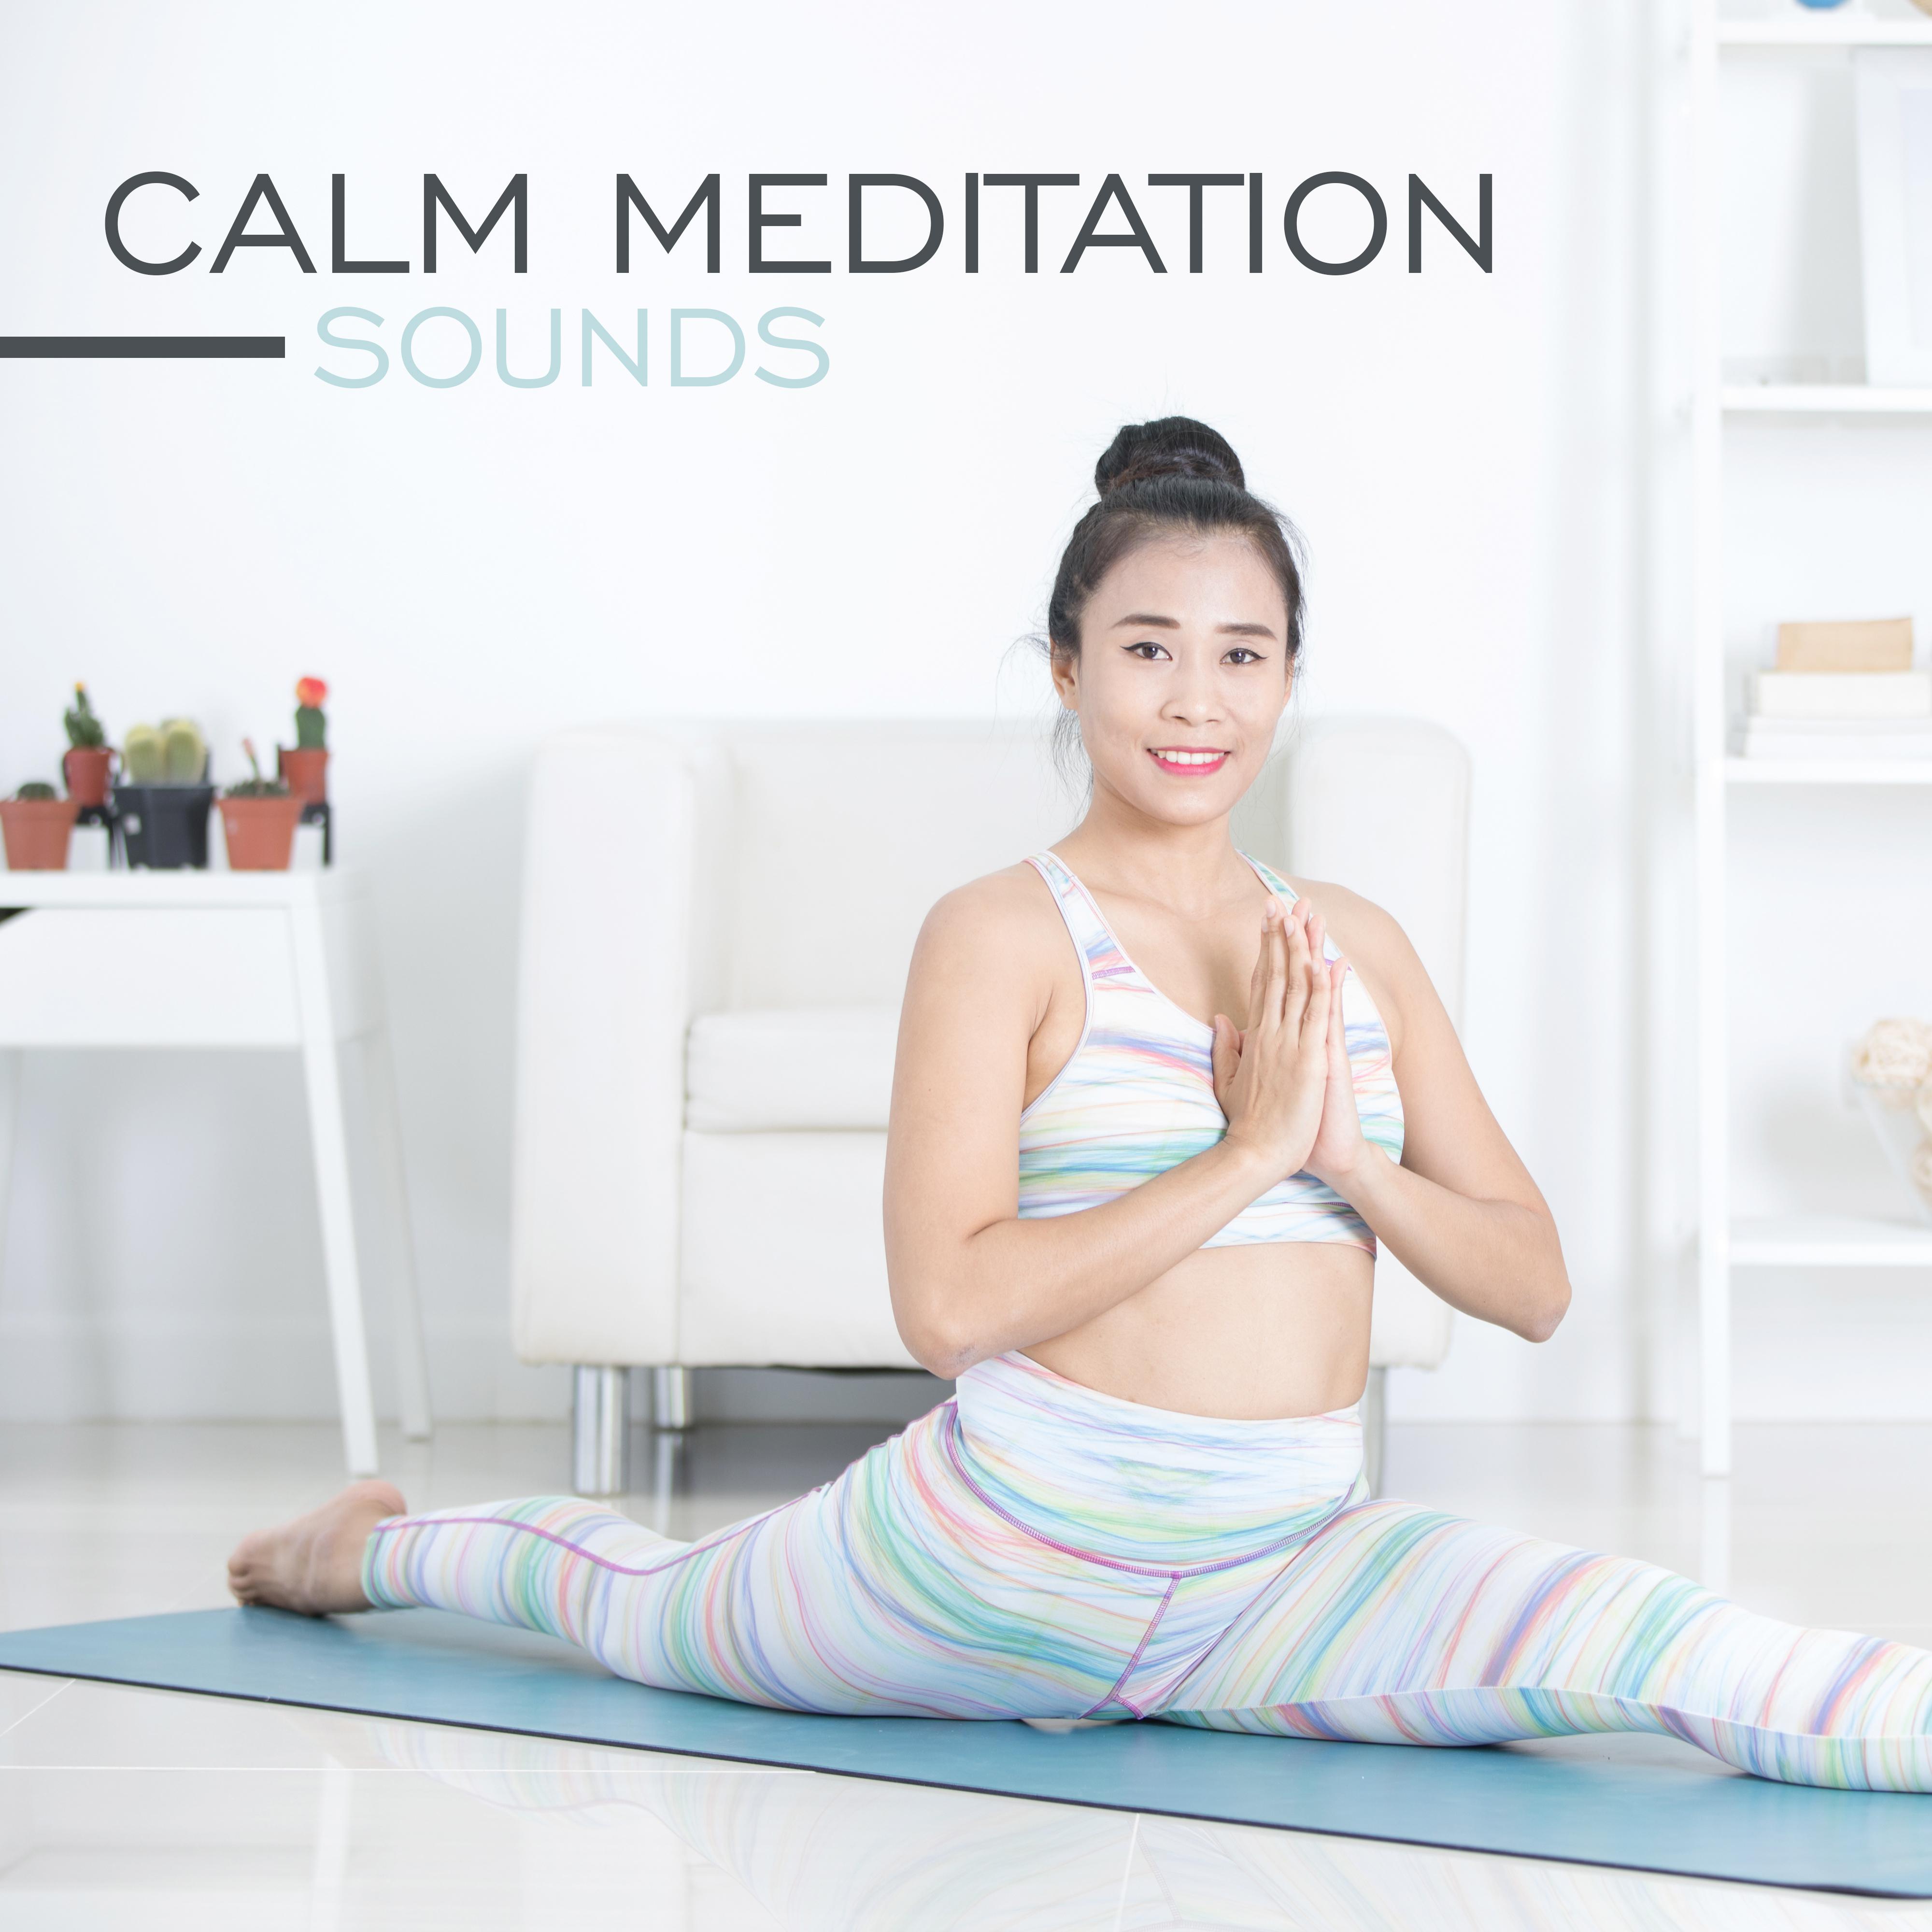 Calm Meditation Sounds